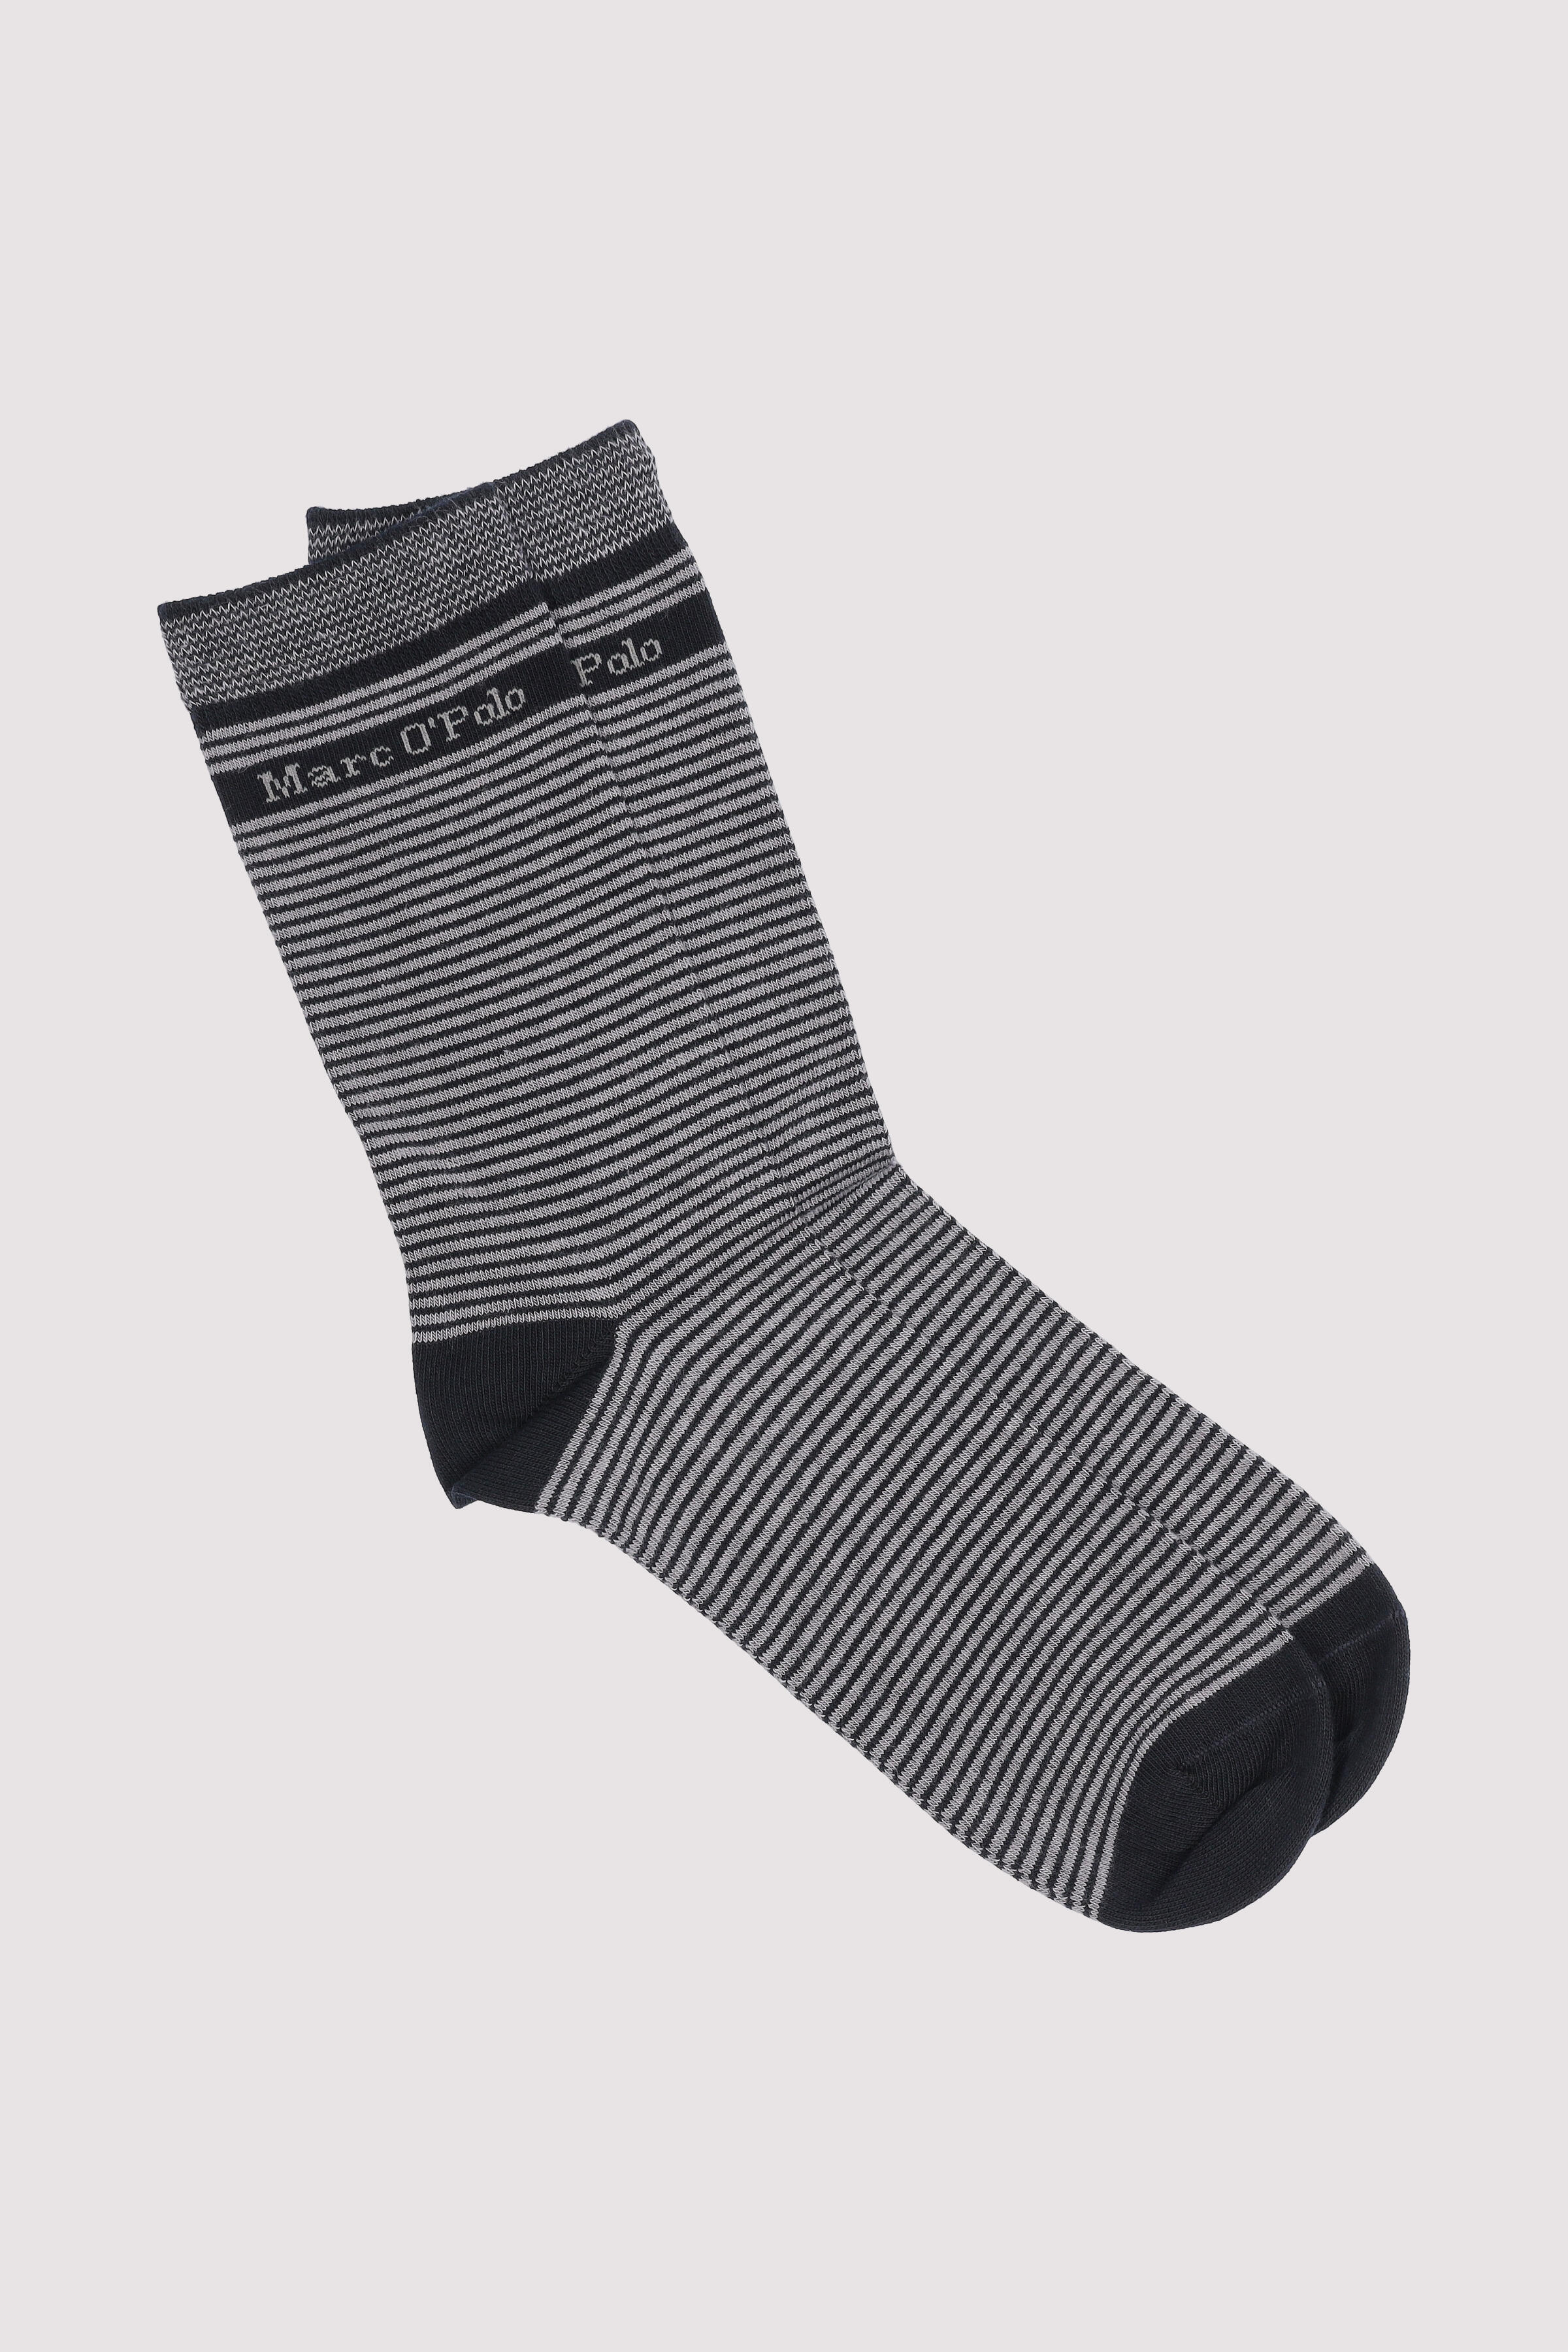 Regular Socks, Striped, mix, 2